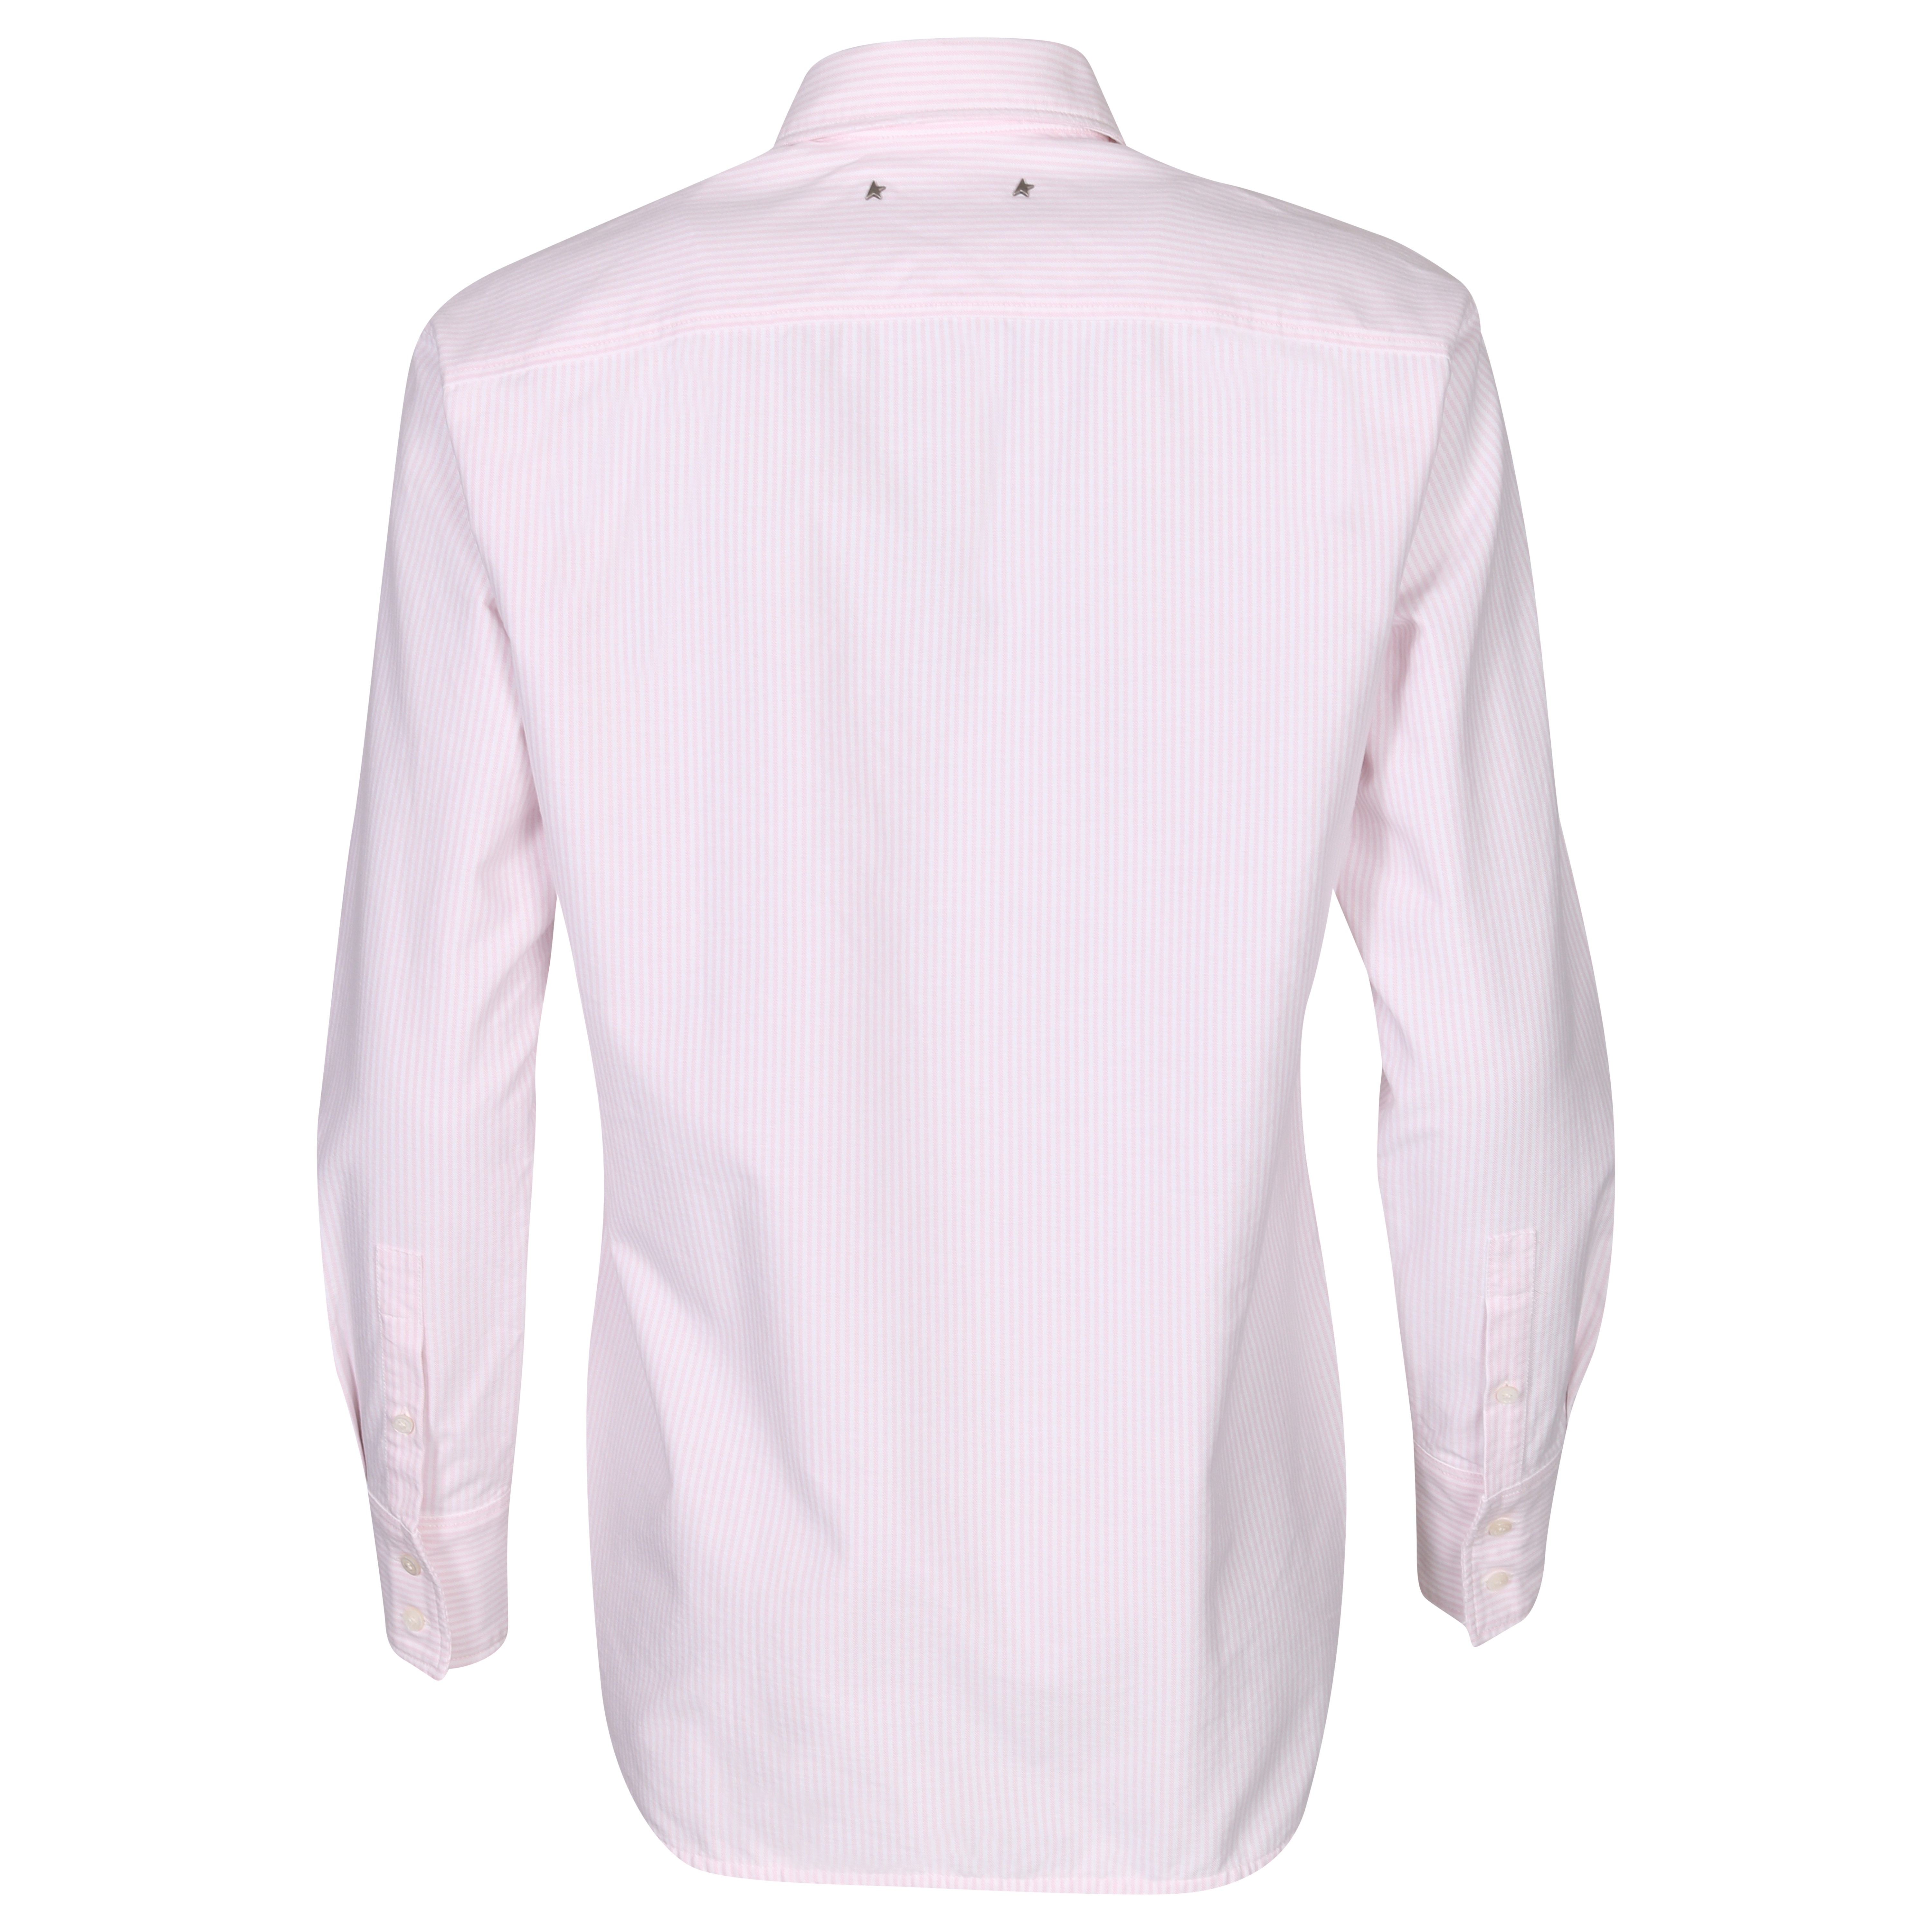 Golden Goose Journey Shirt Boyfriend Striped Oxford Cotton Pink/White XS